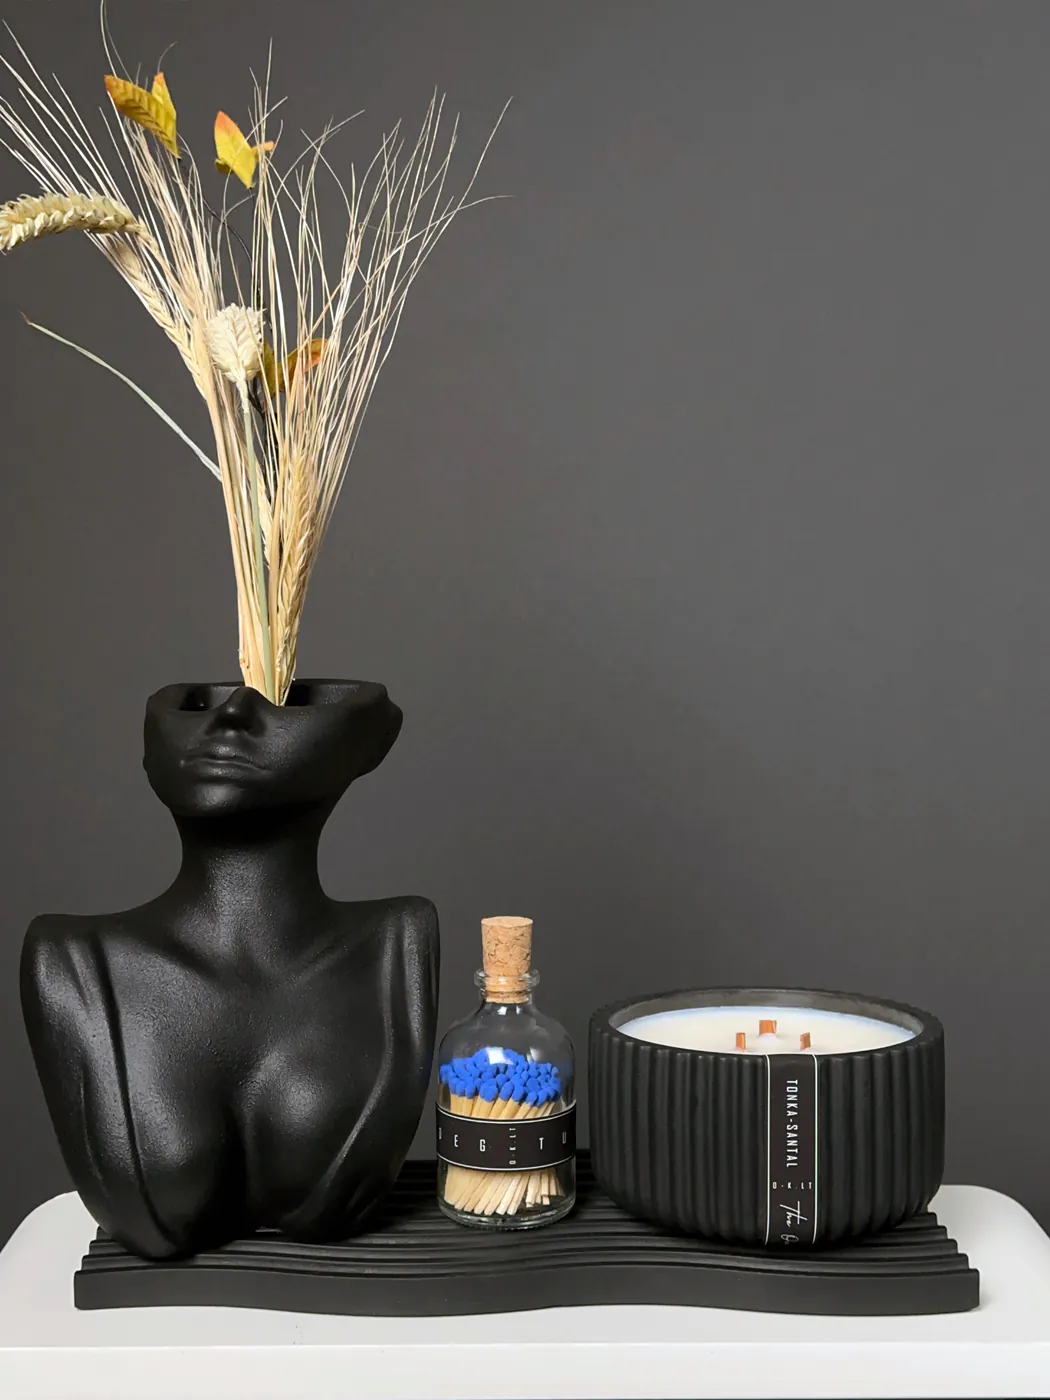 Rinkinys: dekoratyvinė vaza, kvapnioji klasikinė žvakė, degtukai, padėklas.